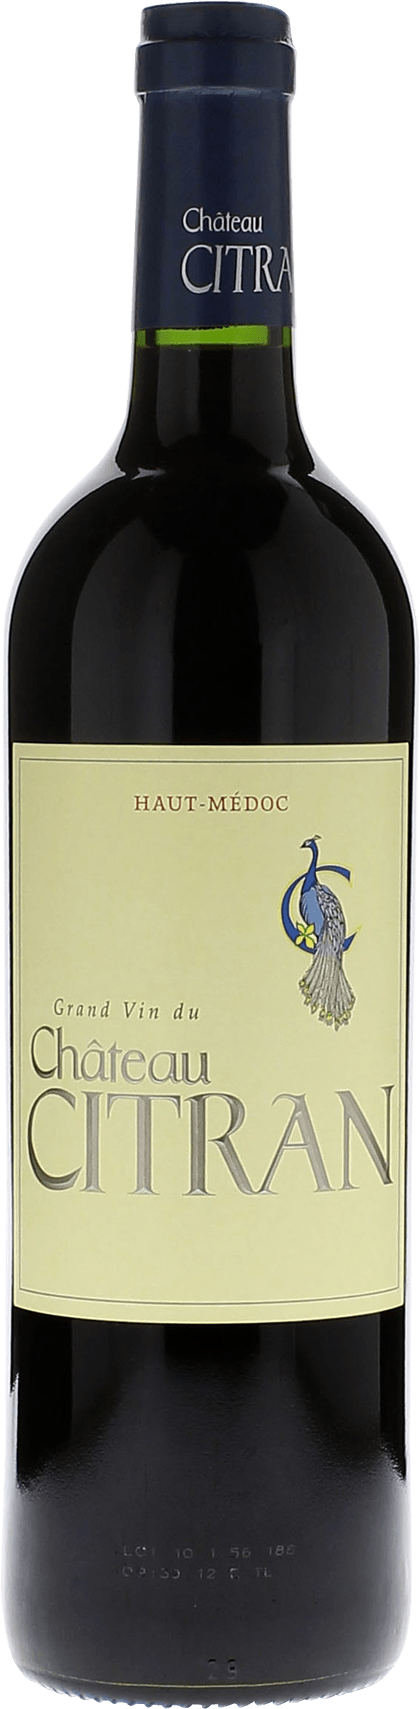 Citran 2020  Haut-Mdoc, Bordeaux rouge